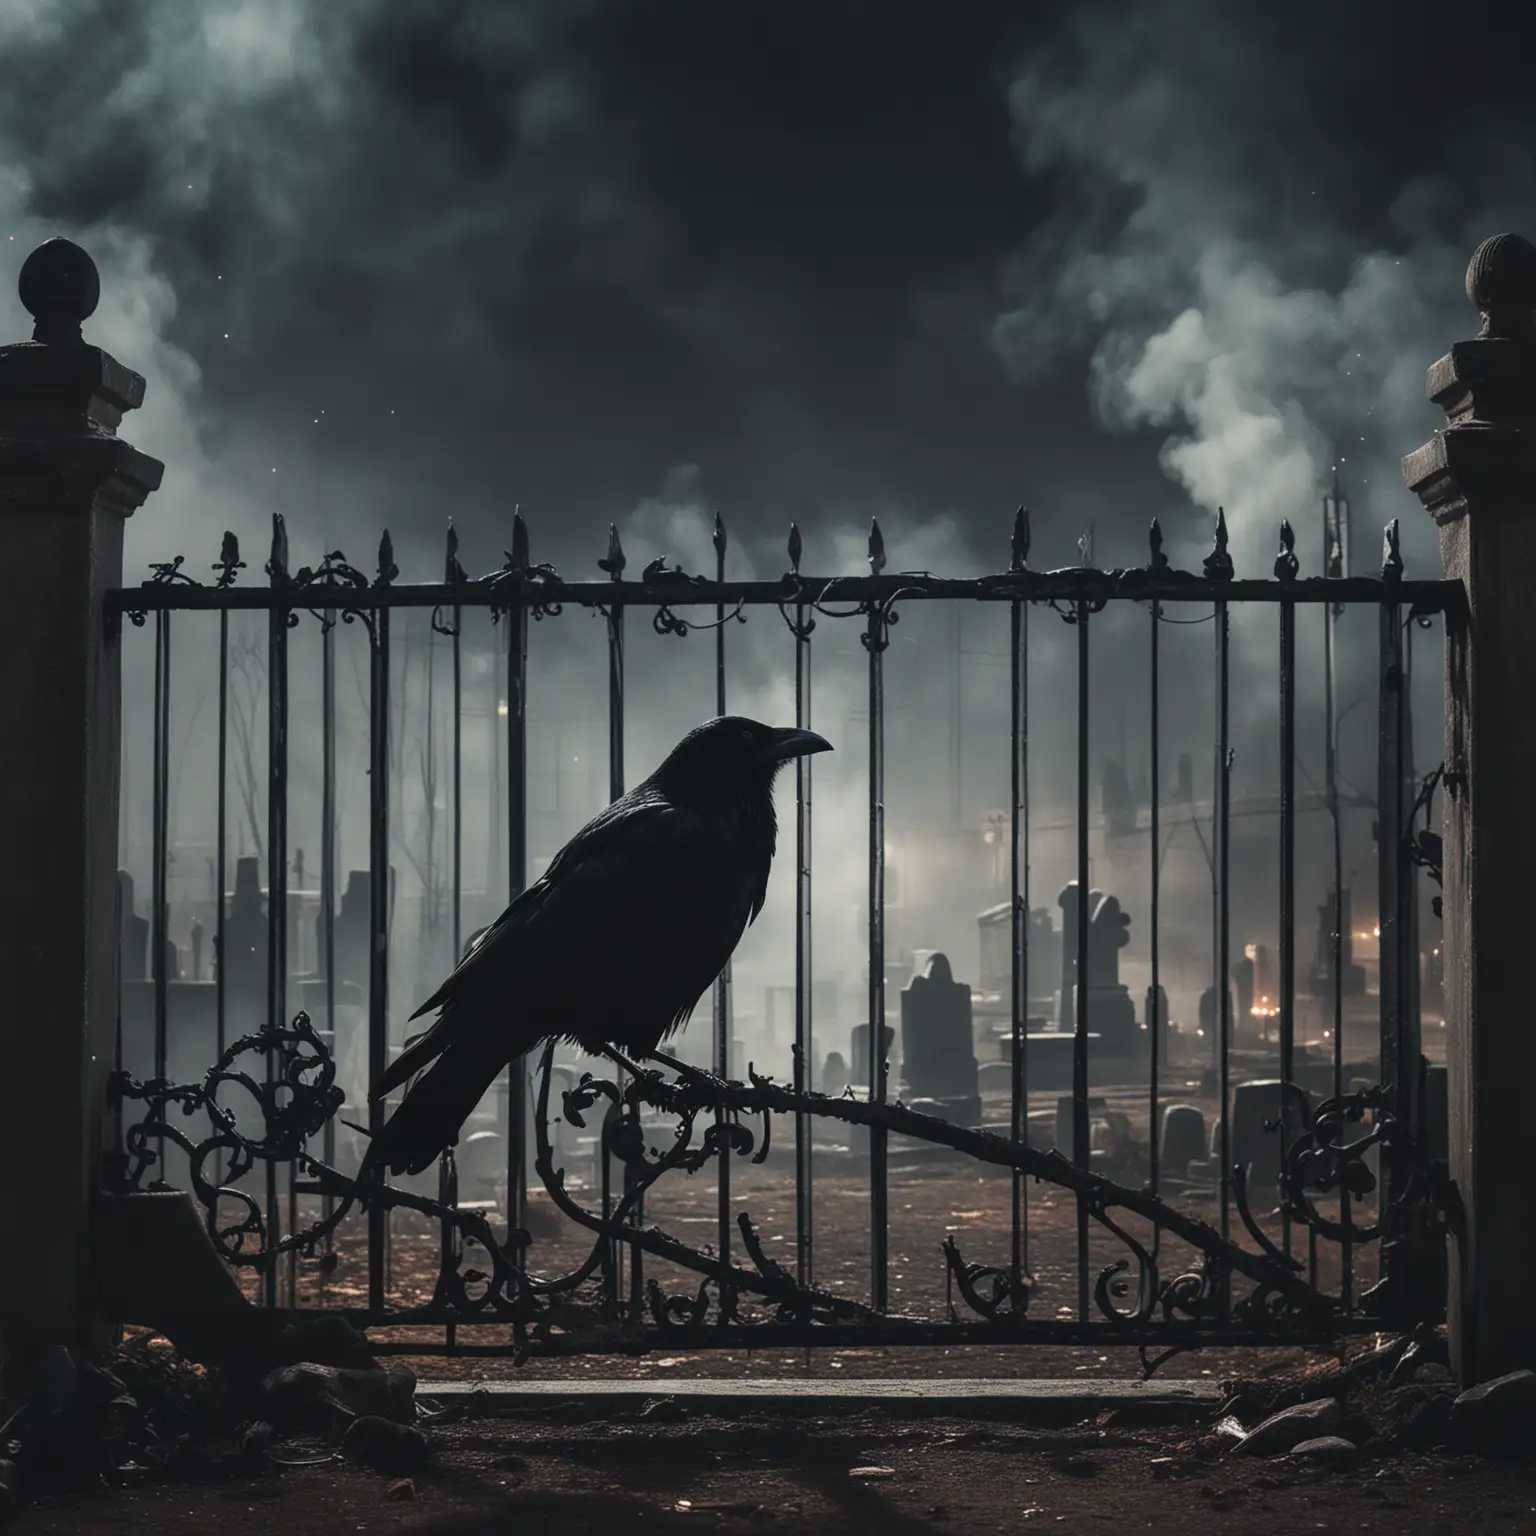 Eerie Night Black Crow Perched on Metal Gate in Haunted Graveyard